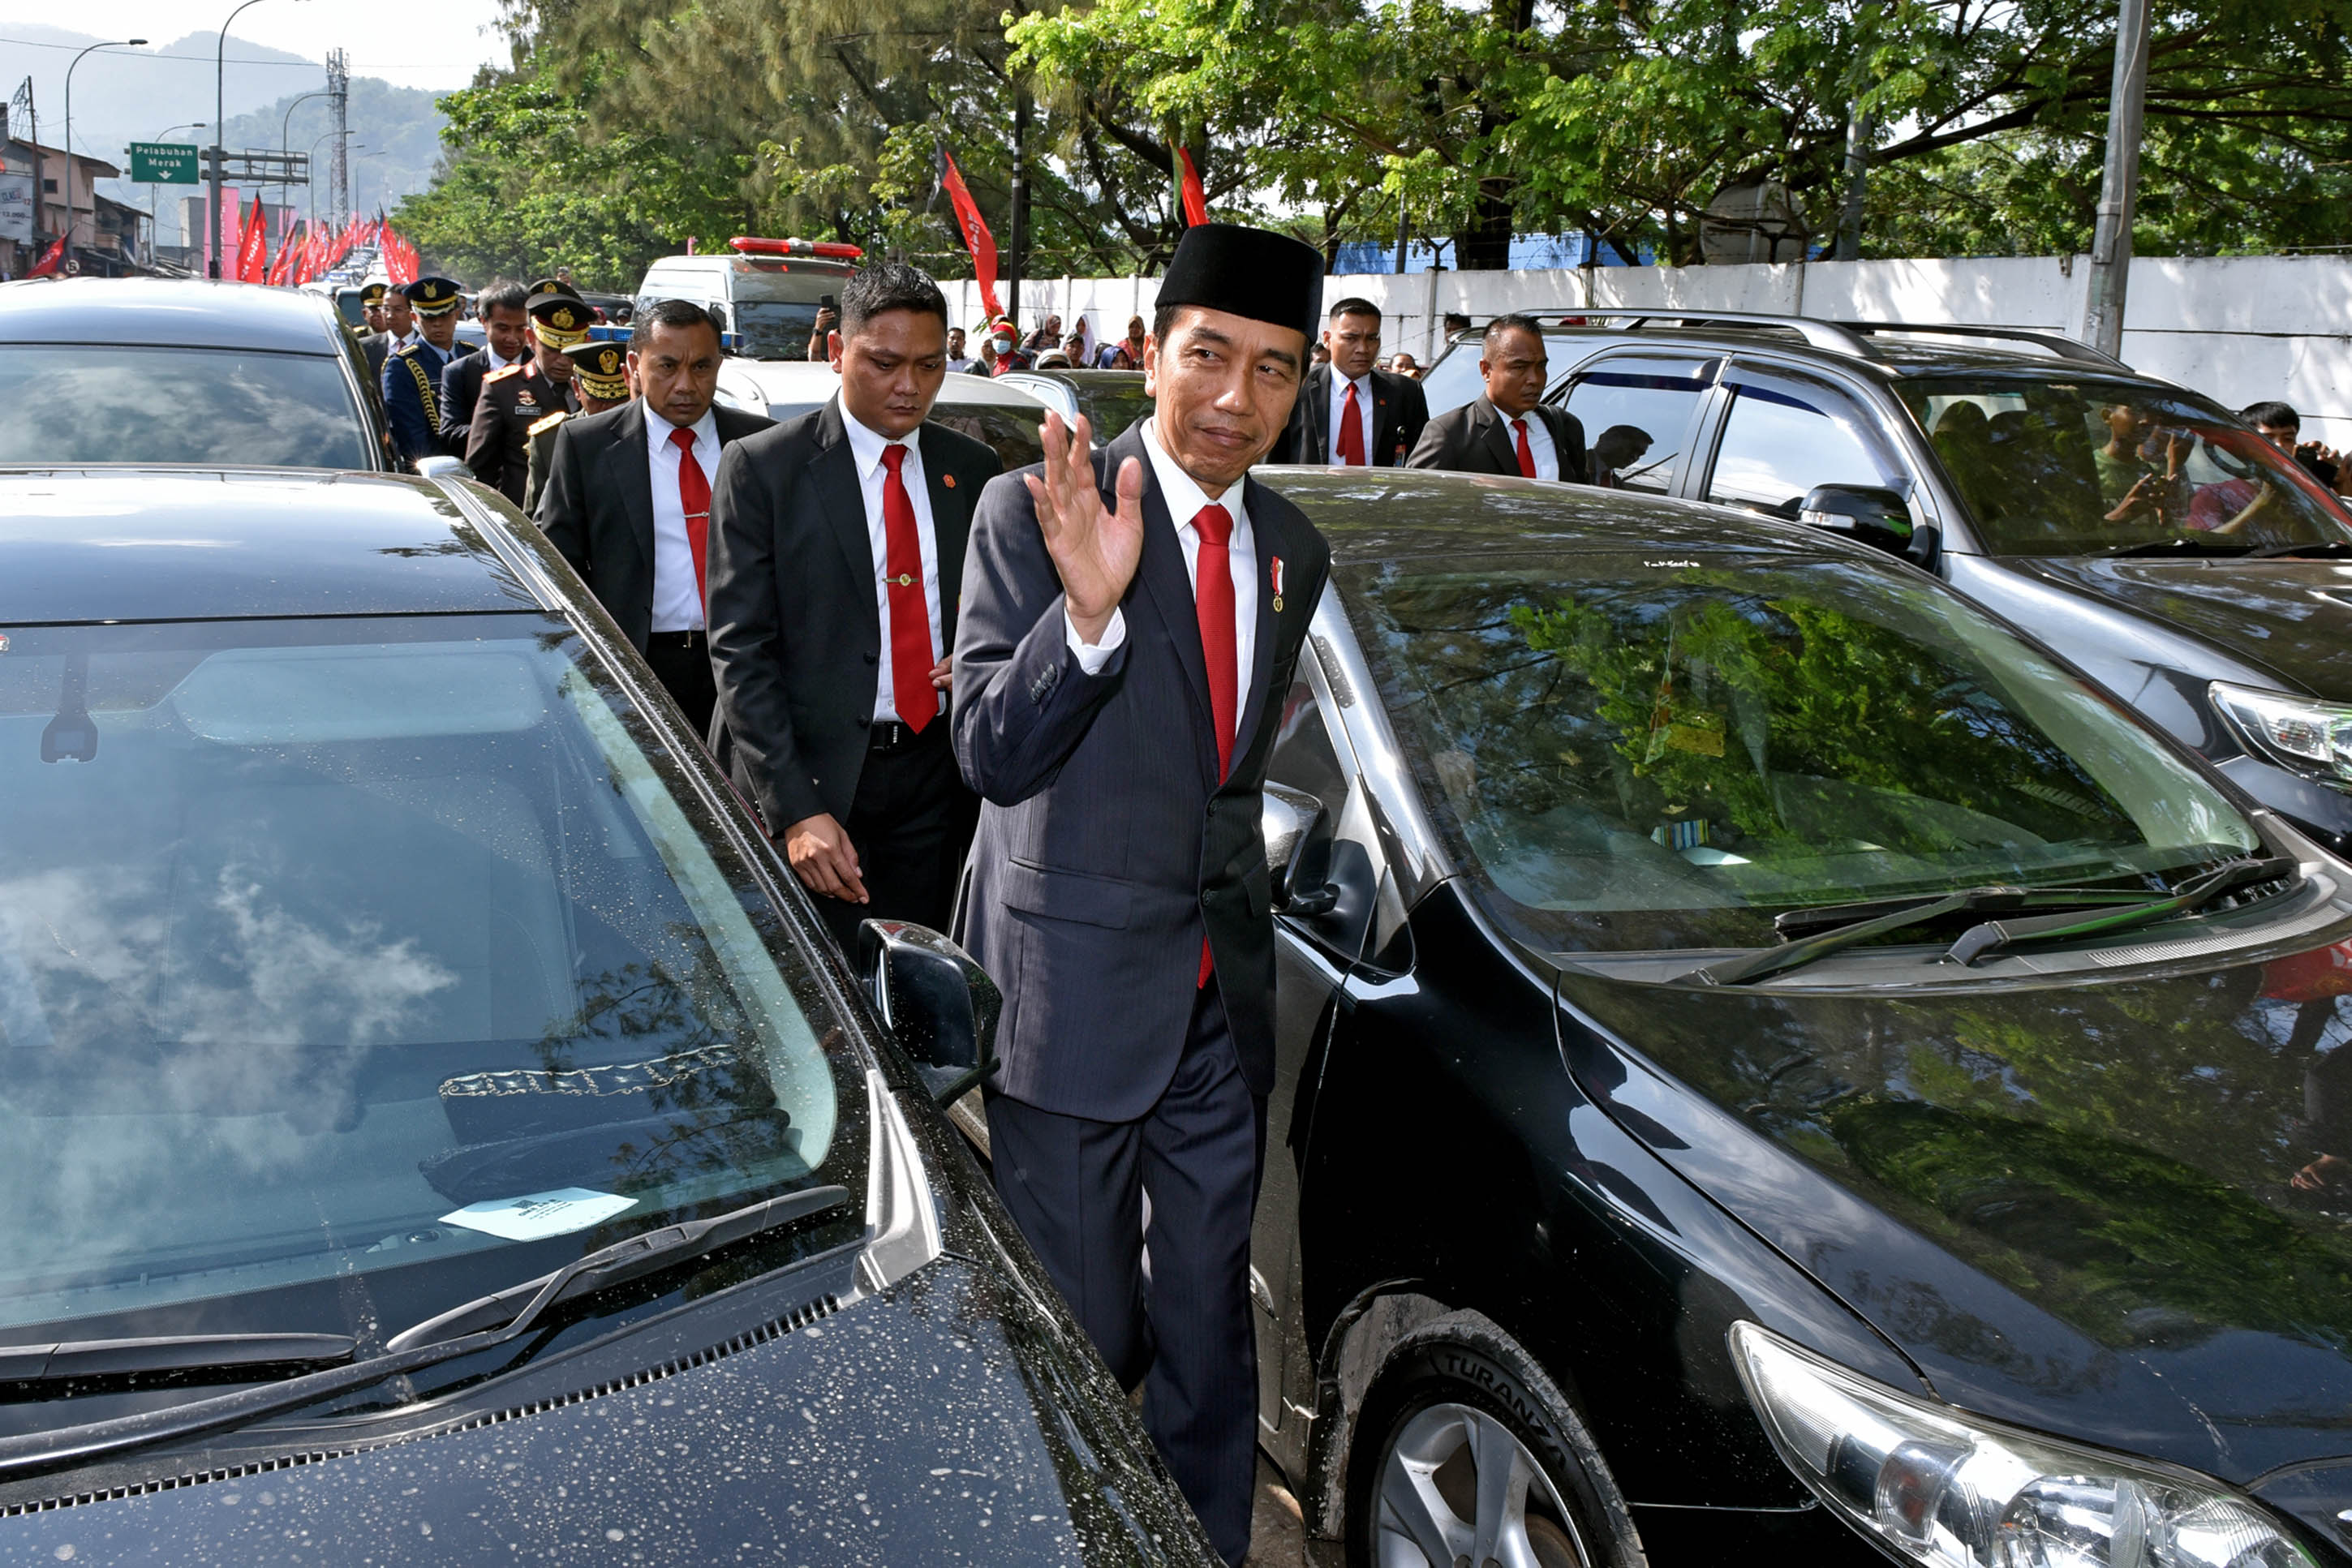 رئيس إندونيسيا يتوجه لموقع العرض سيرًا بسبب الزحام المرورى